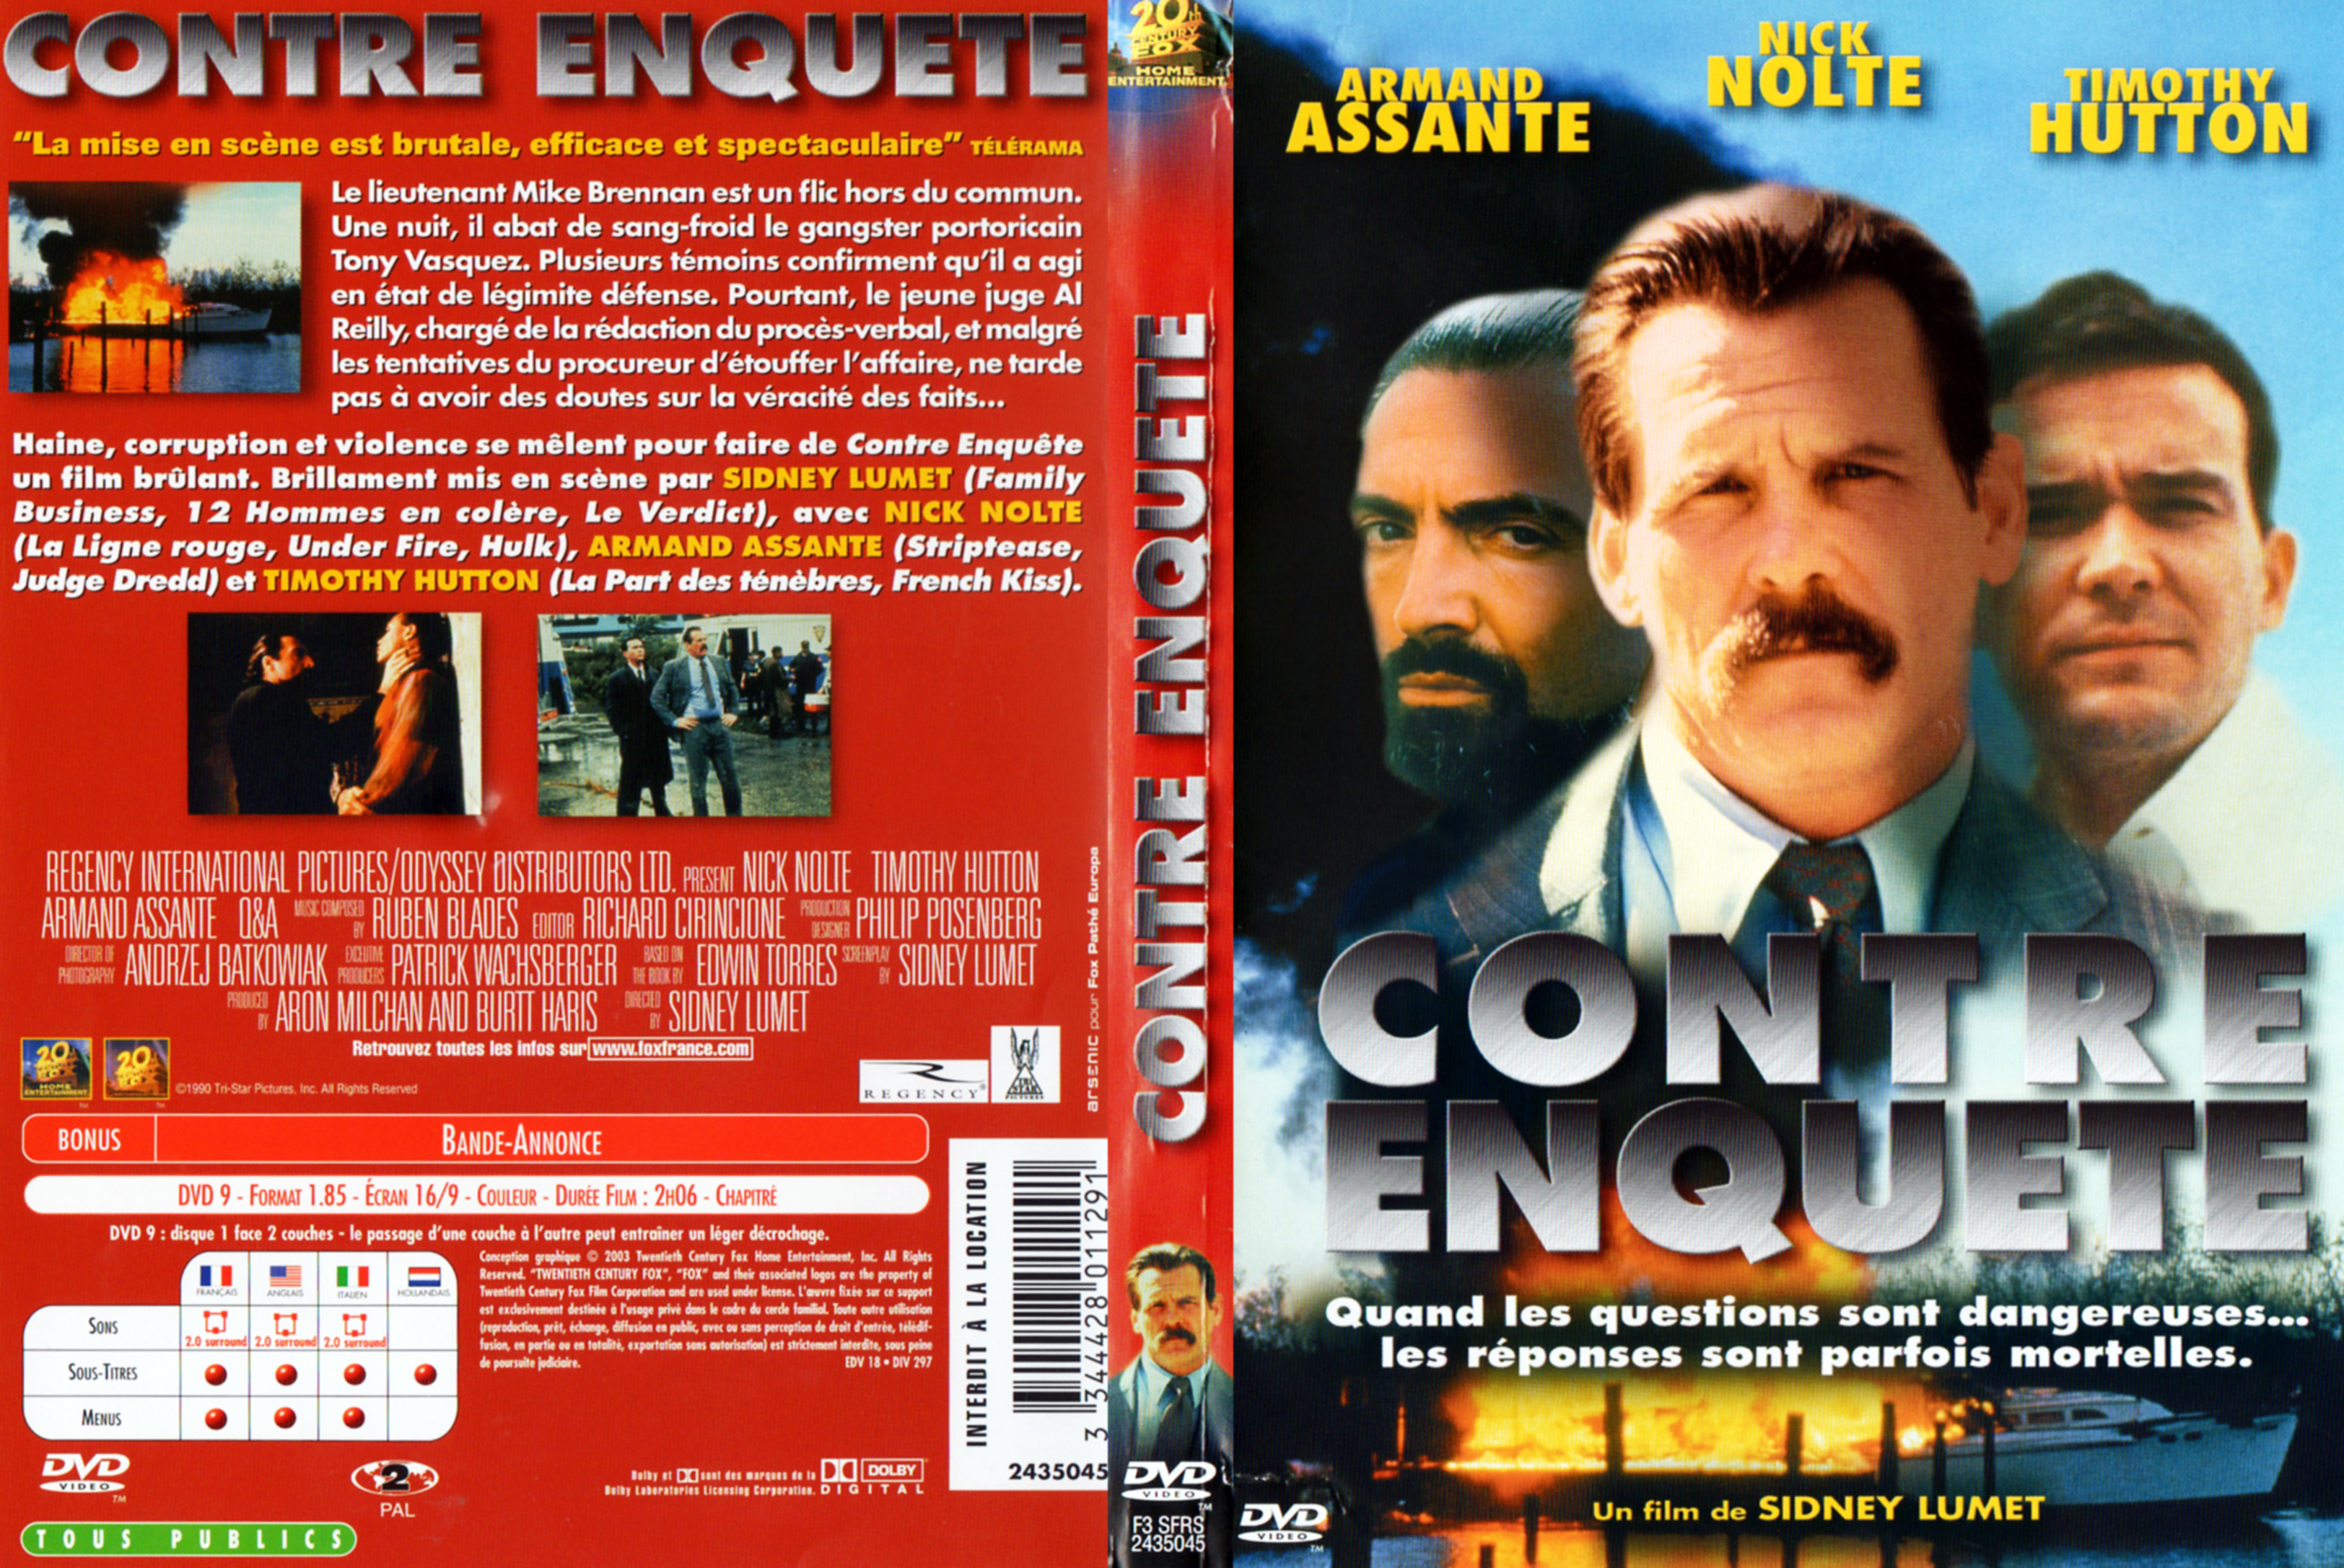 Jaquette DVD Contre enqute (Sidney Lumet) v2